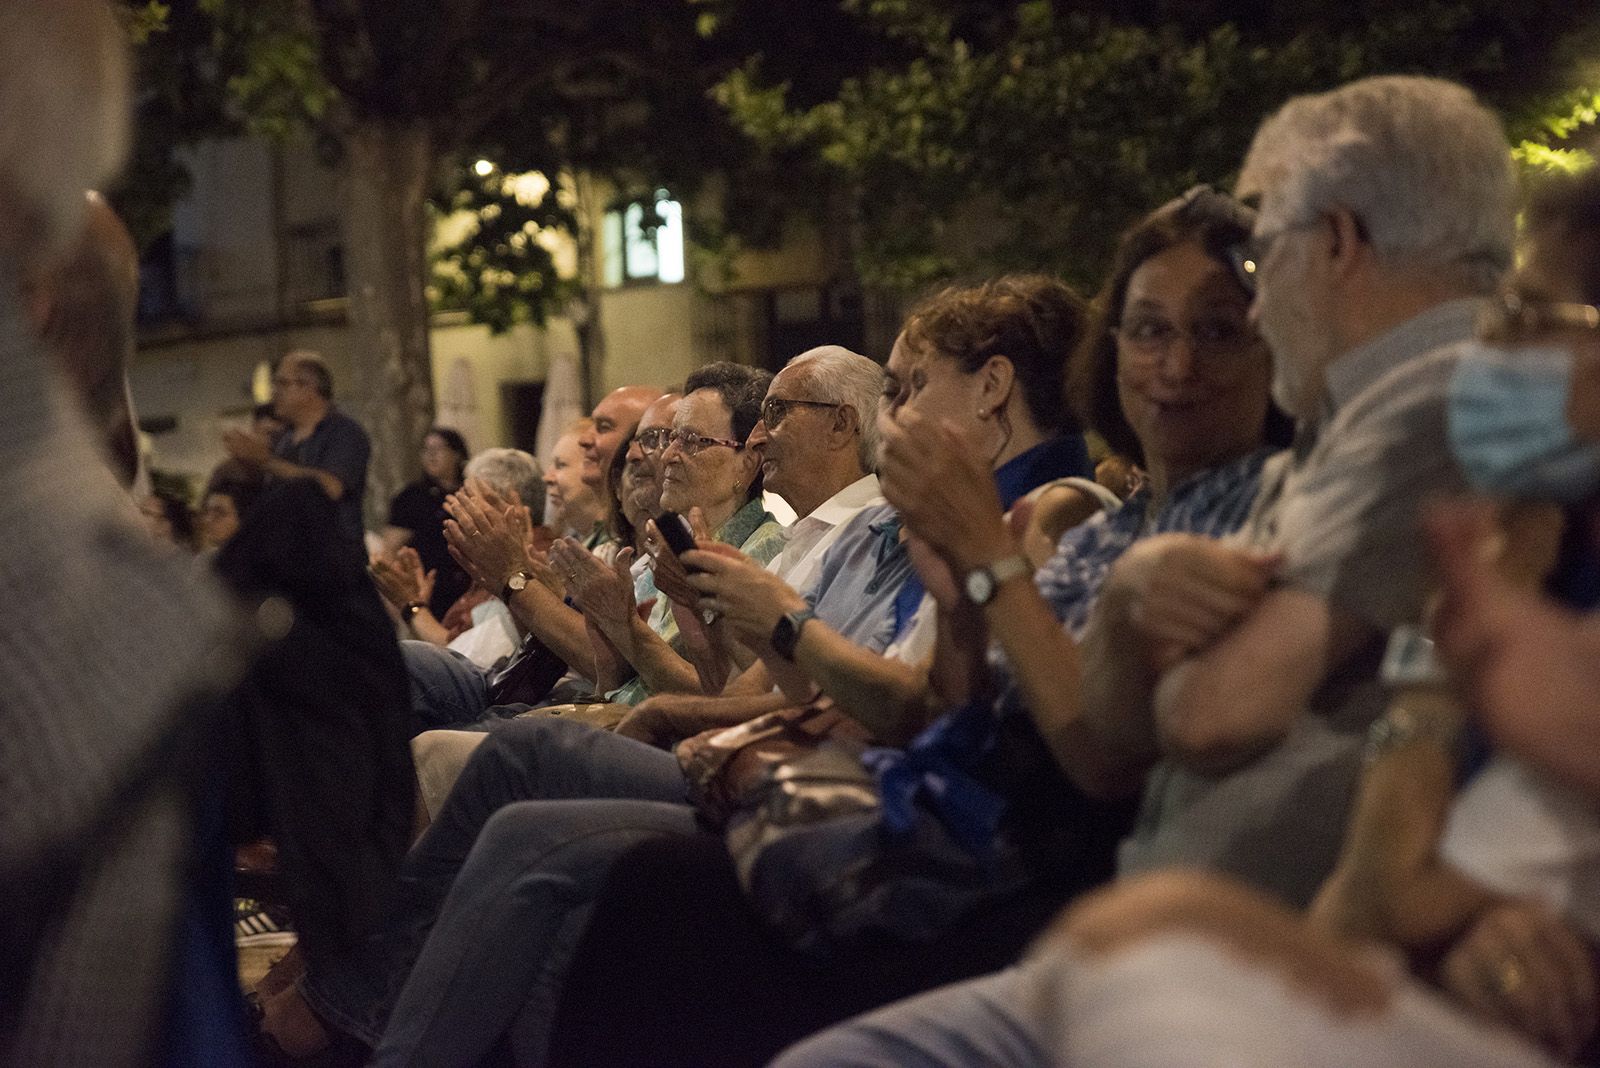 El públic aplaudint durant la cantada d'havaneres del TOT Sant Cugat. FOTO: Bernat Millet.